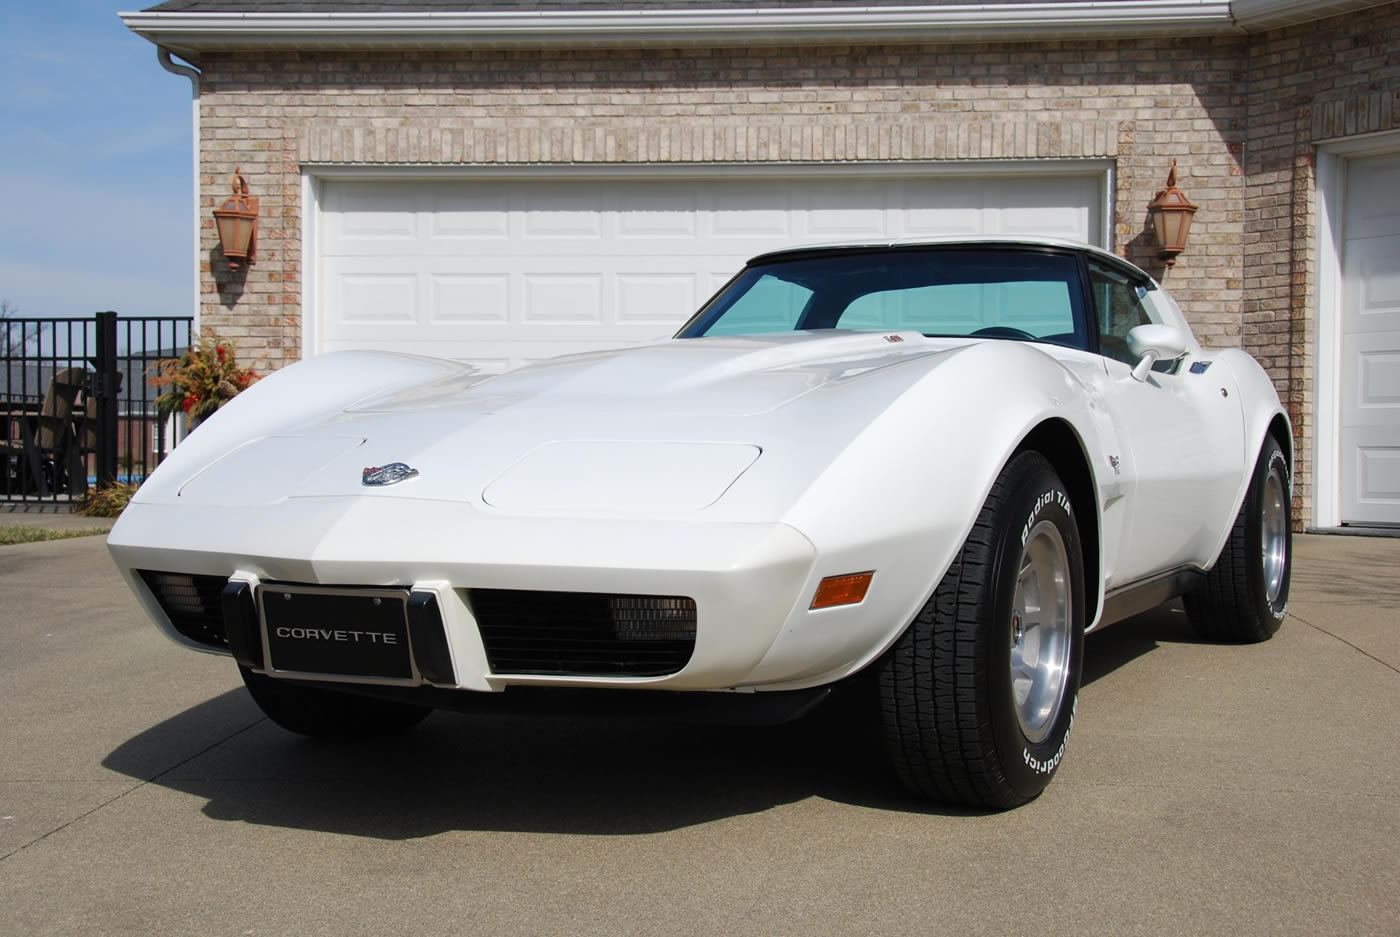 1978 Corvette L82 in Classic White